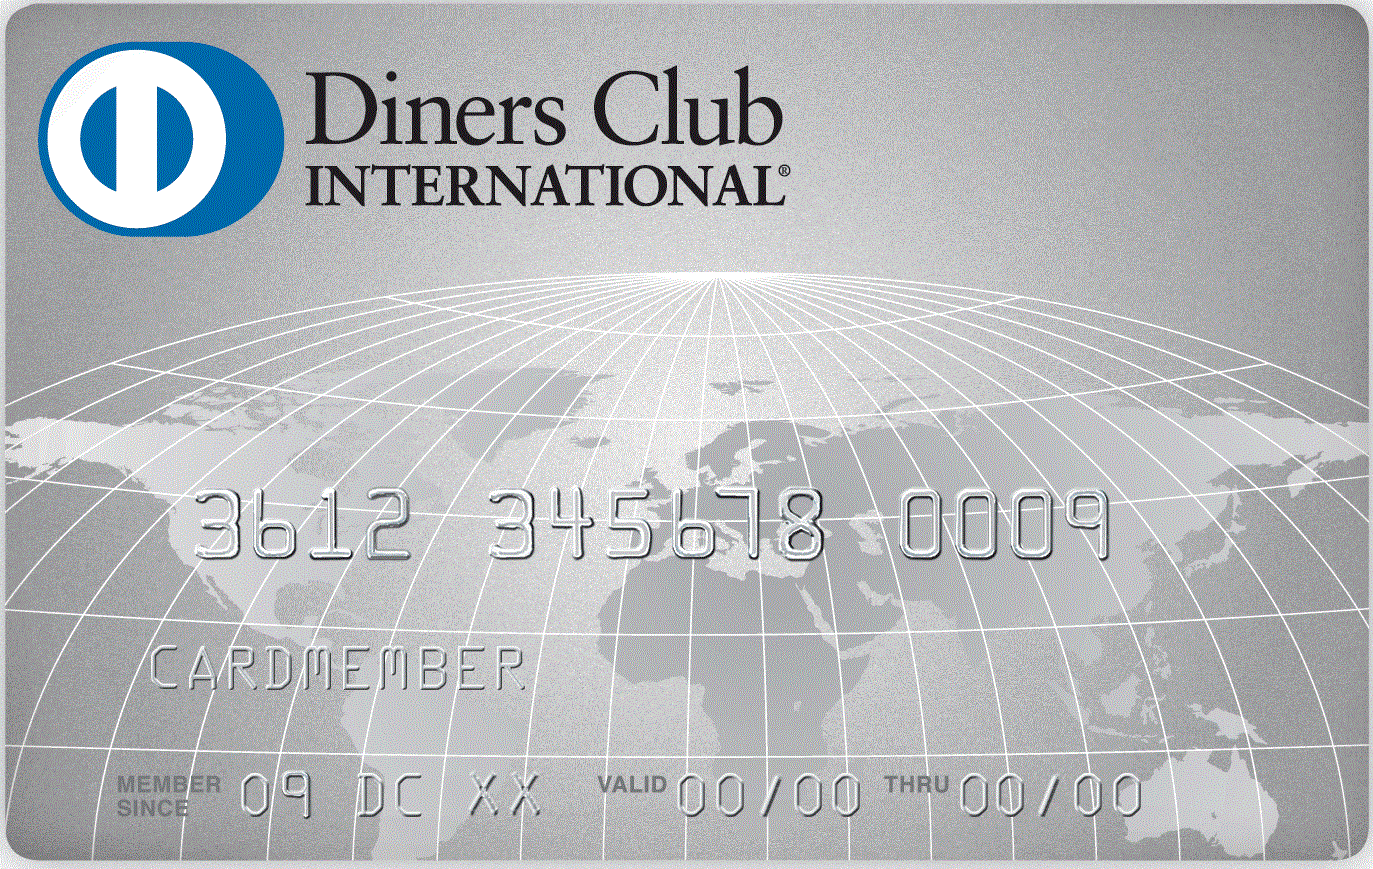 Diners club. Diners Club International. Jamie Walker Director Diners Club International.